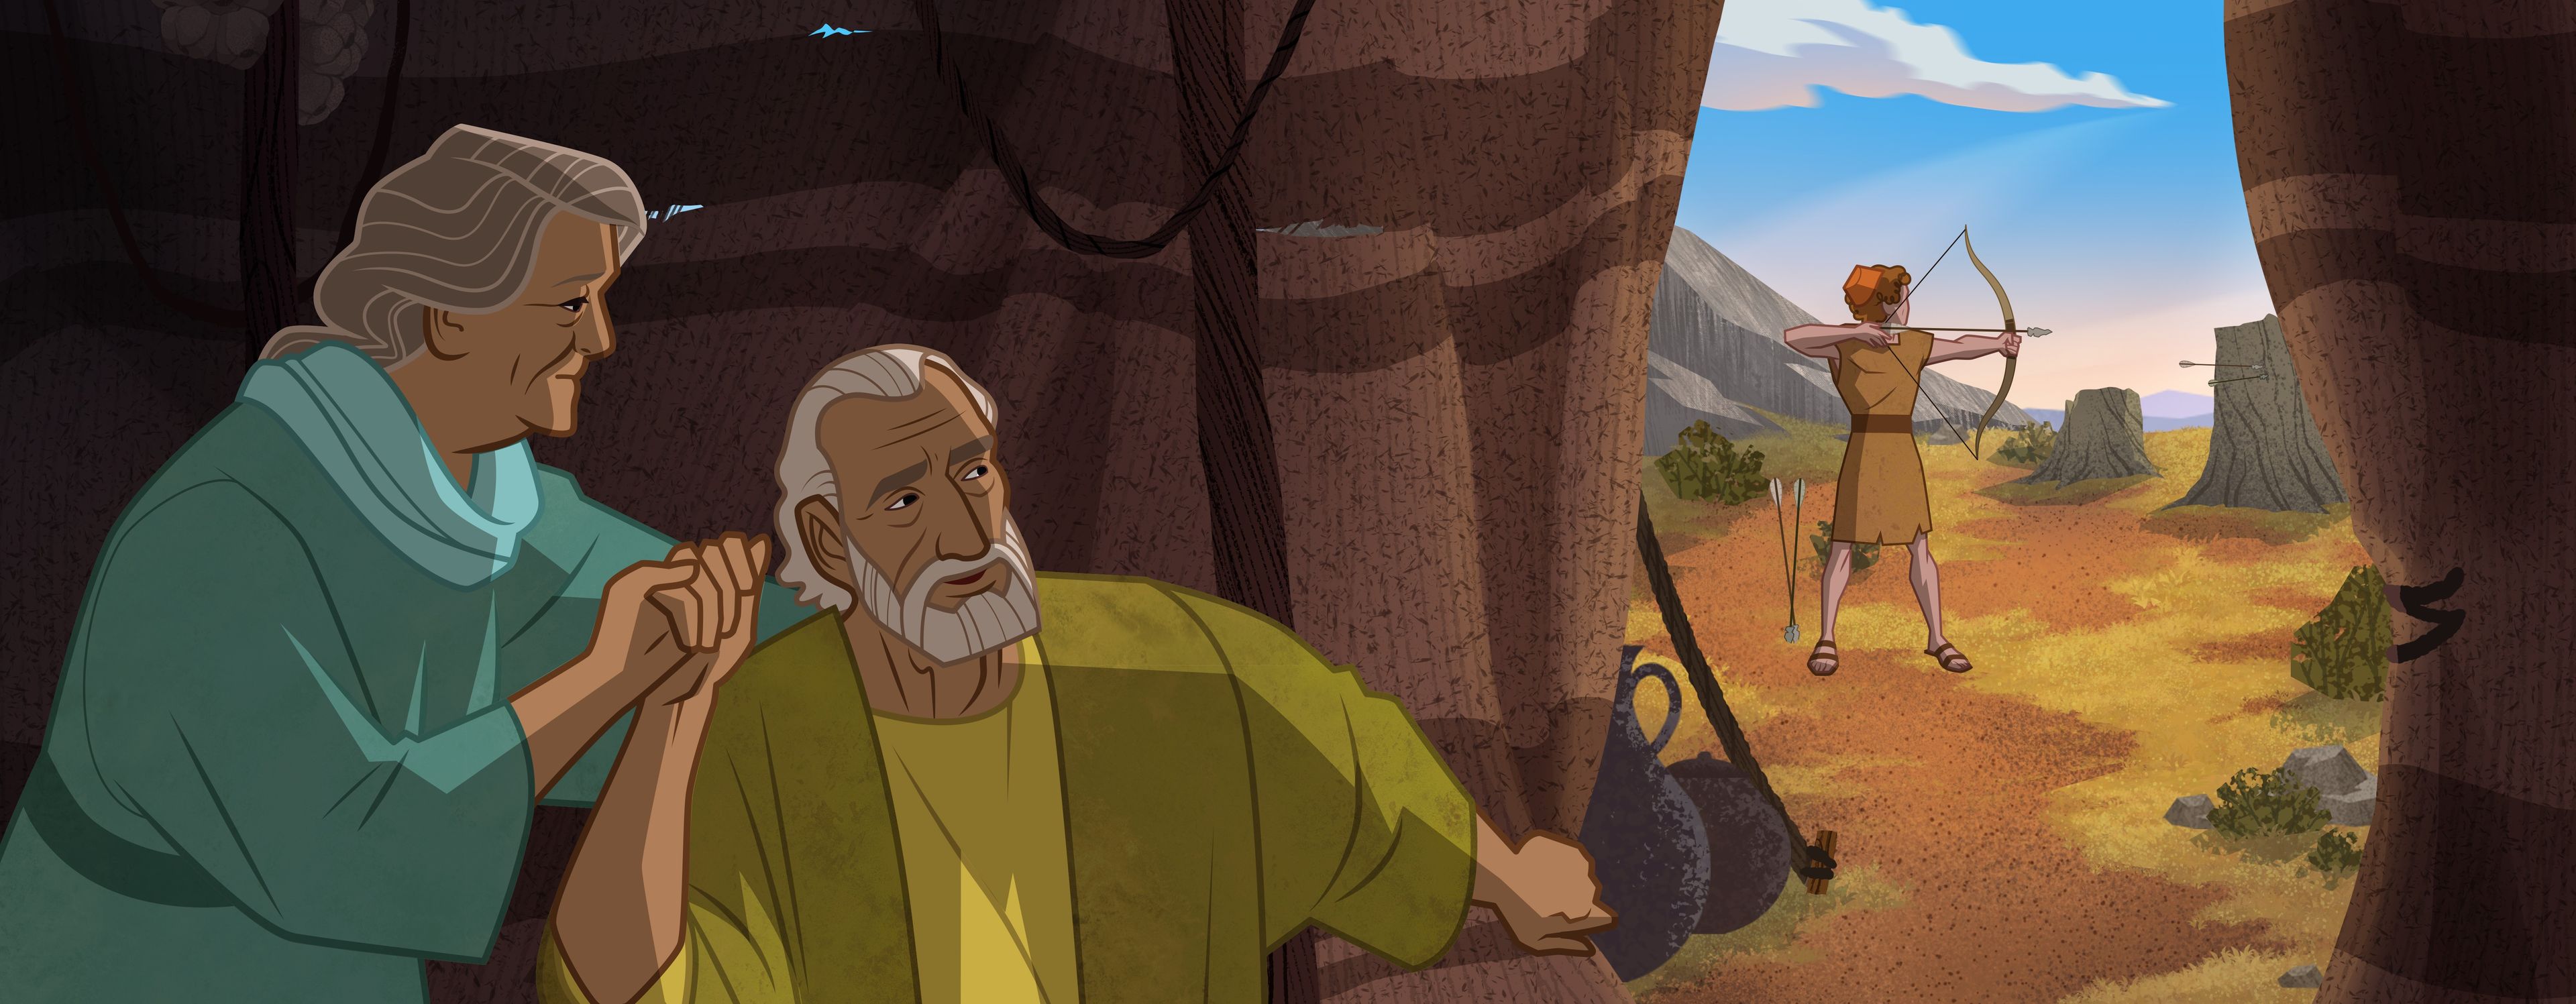 Иллюстрация: Сара и Авраам смотрят на Исаака. 
Бытие 17:1-8; 22:1-2